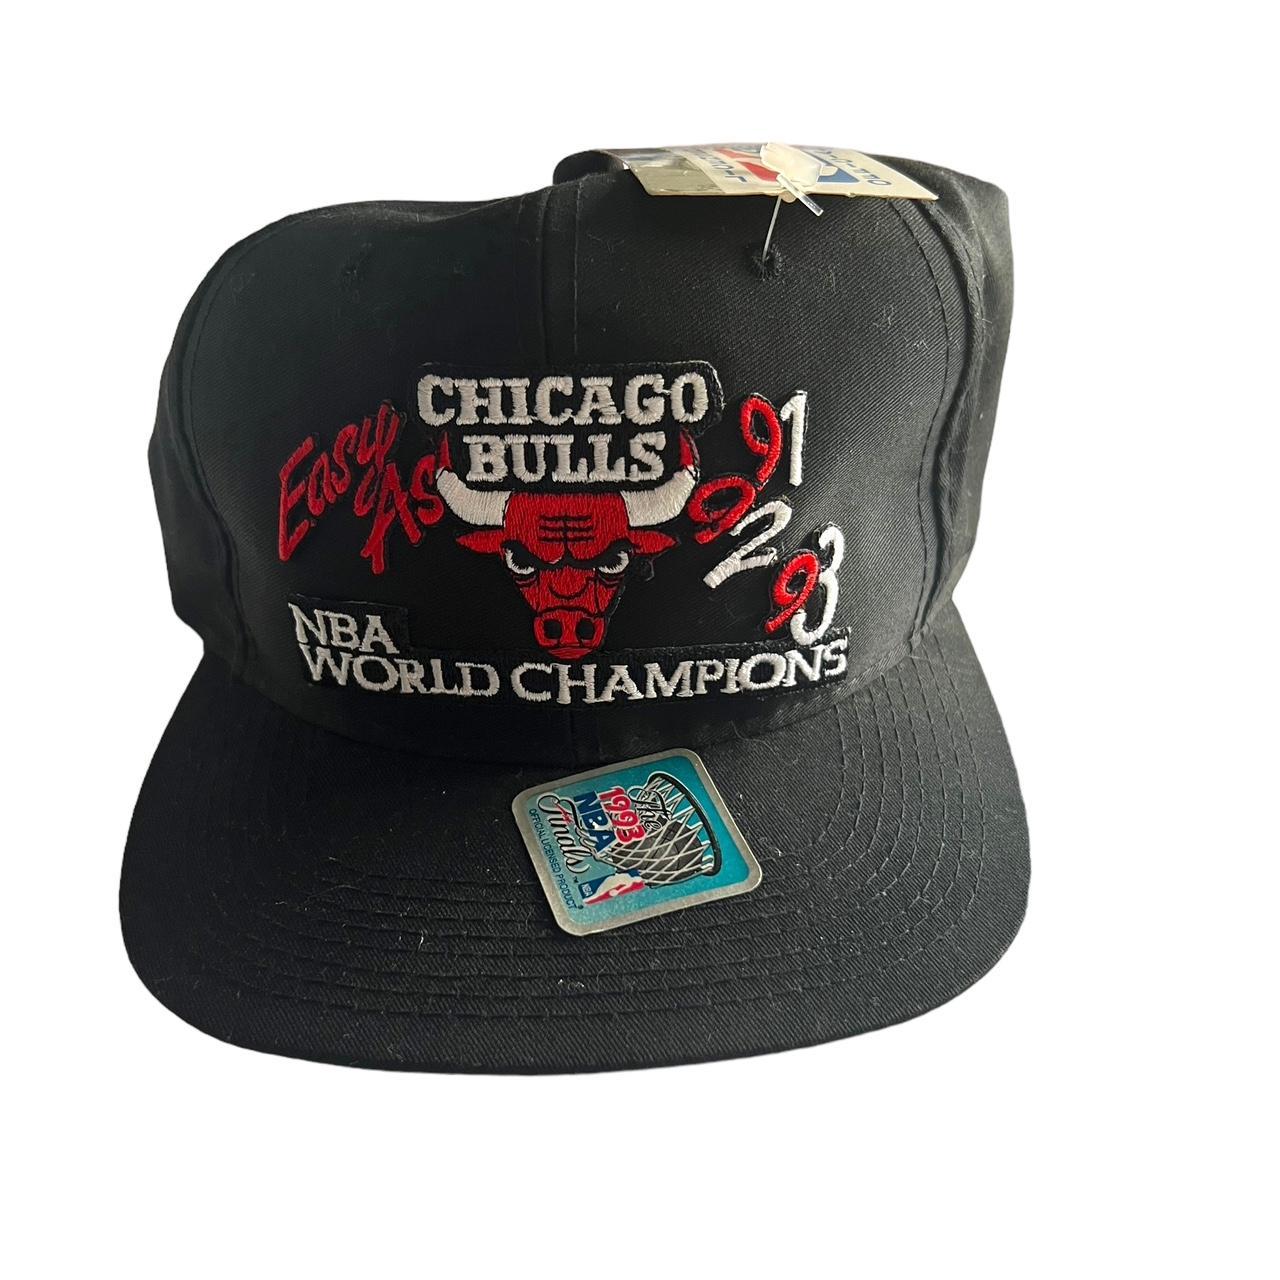 デッドストック chicago bulls 3PEAT 1993 NBA-